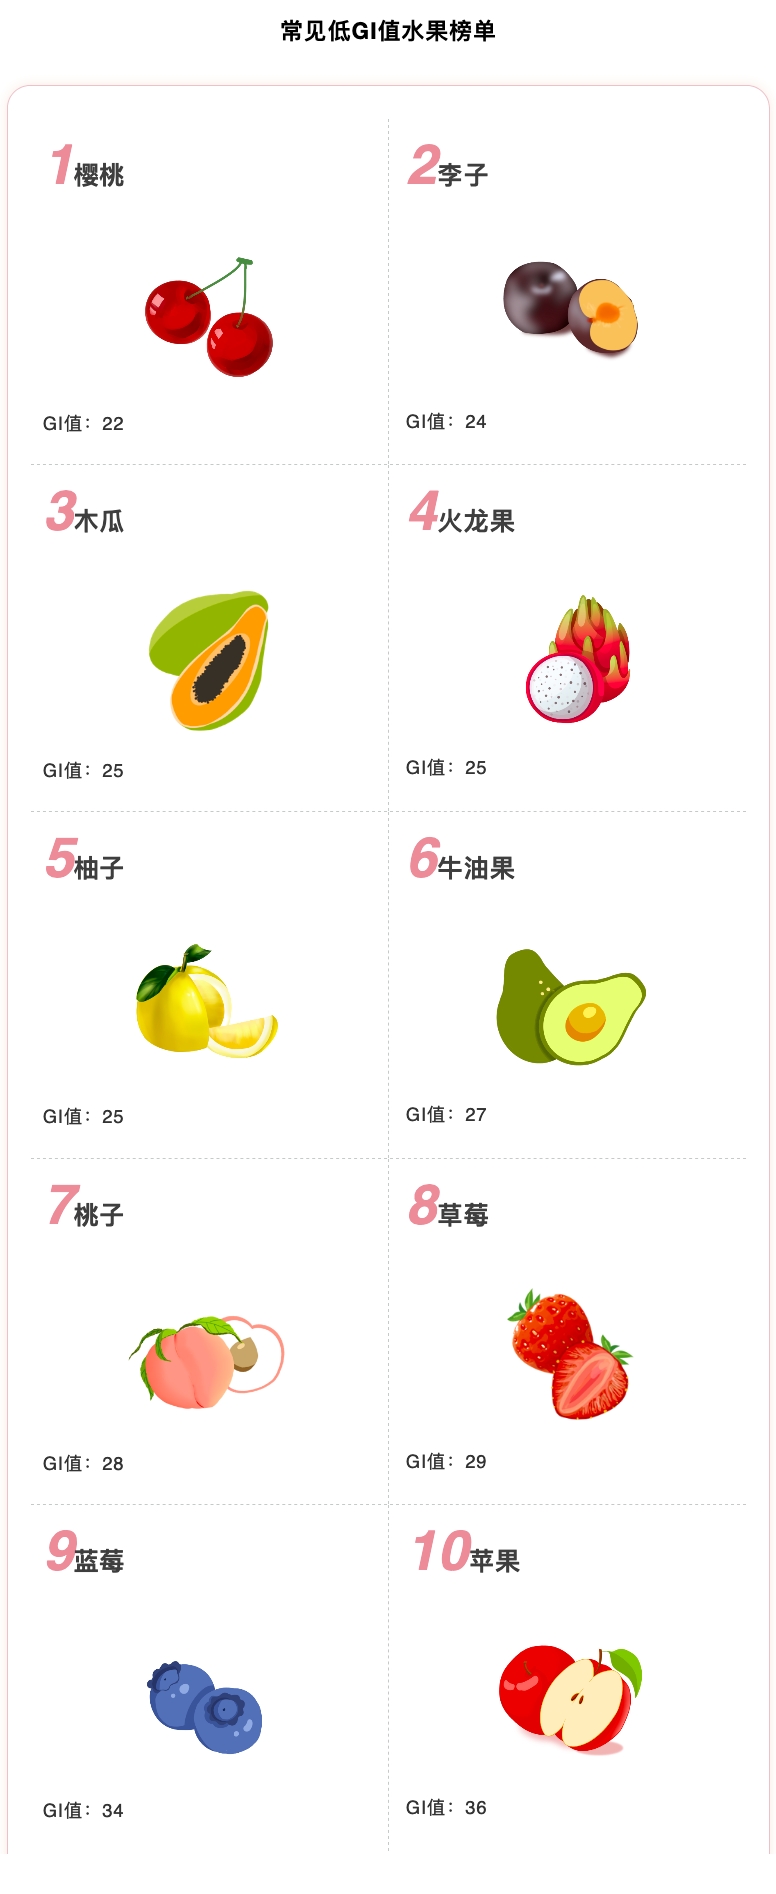 因此 木瓜,草莓,李子,柚子等属于低热量,低gi的水果,对减肥和控制